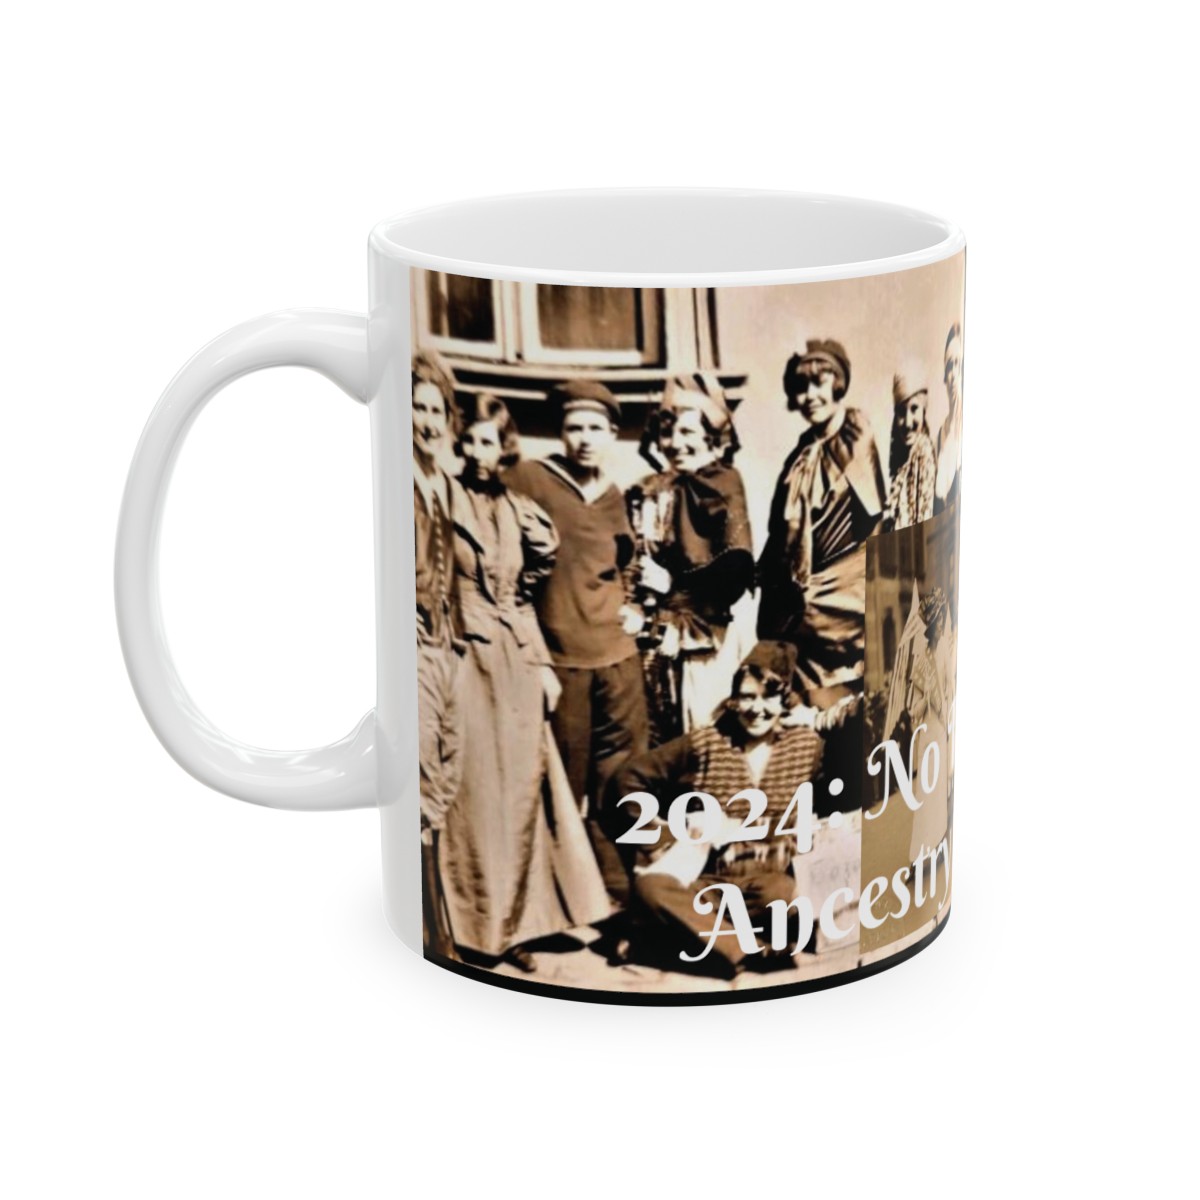 2024: Heritage Harmony Mug – No Political Fray, Ancestry Every Day! - Ceramic Mug 11oz product thumbnail image